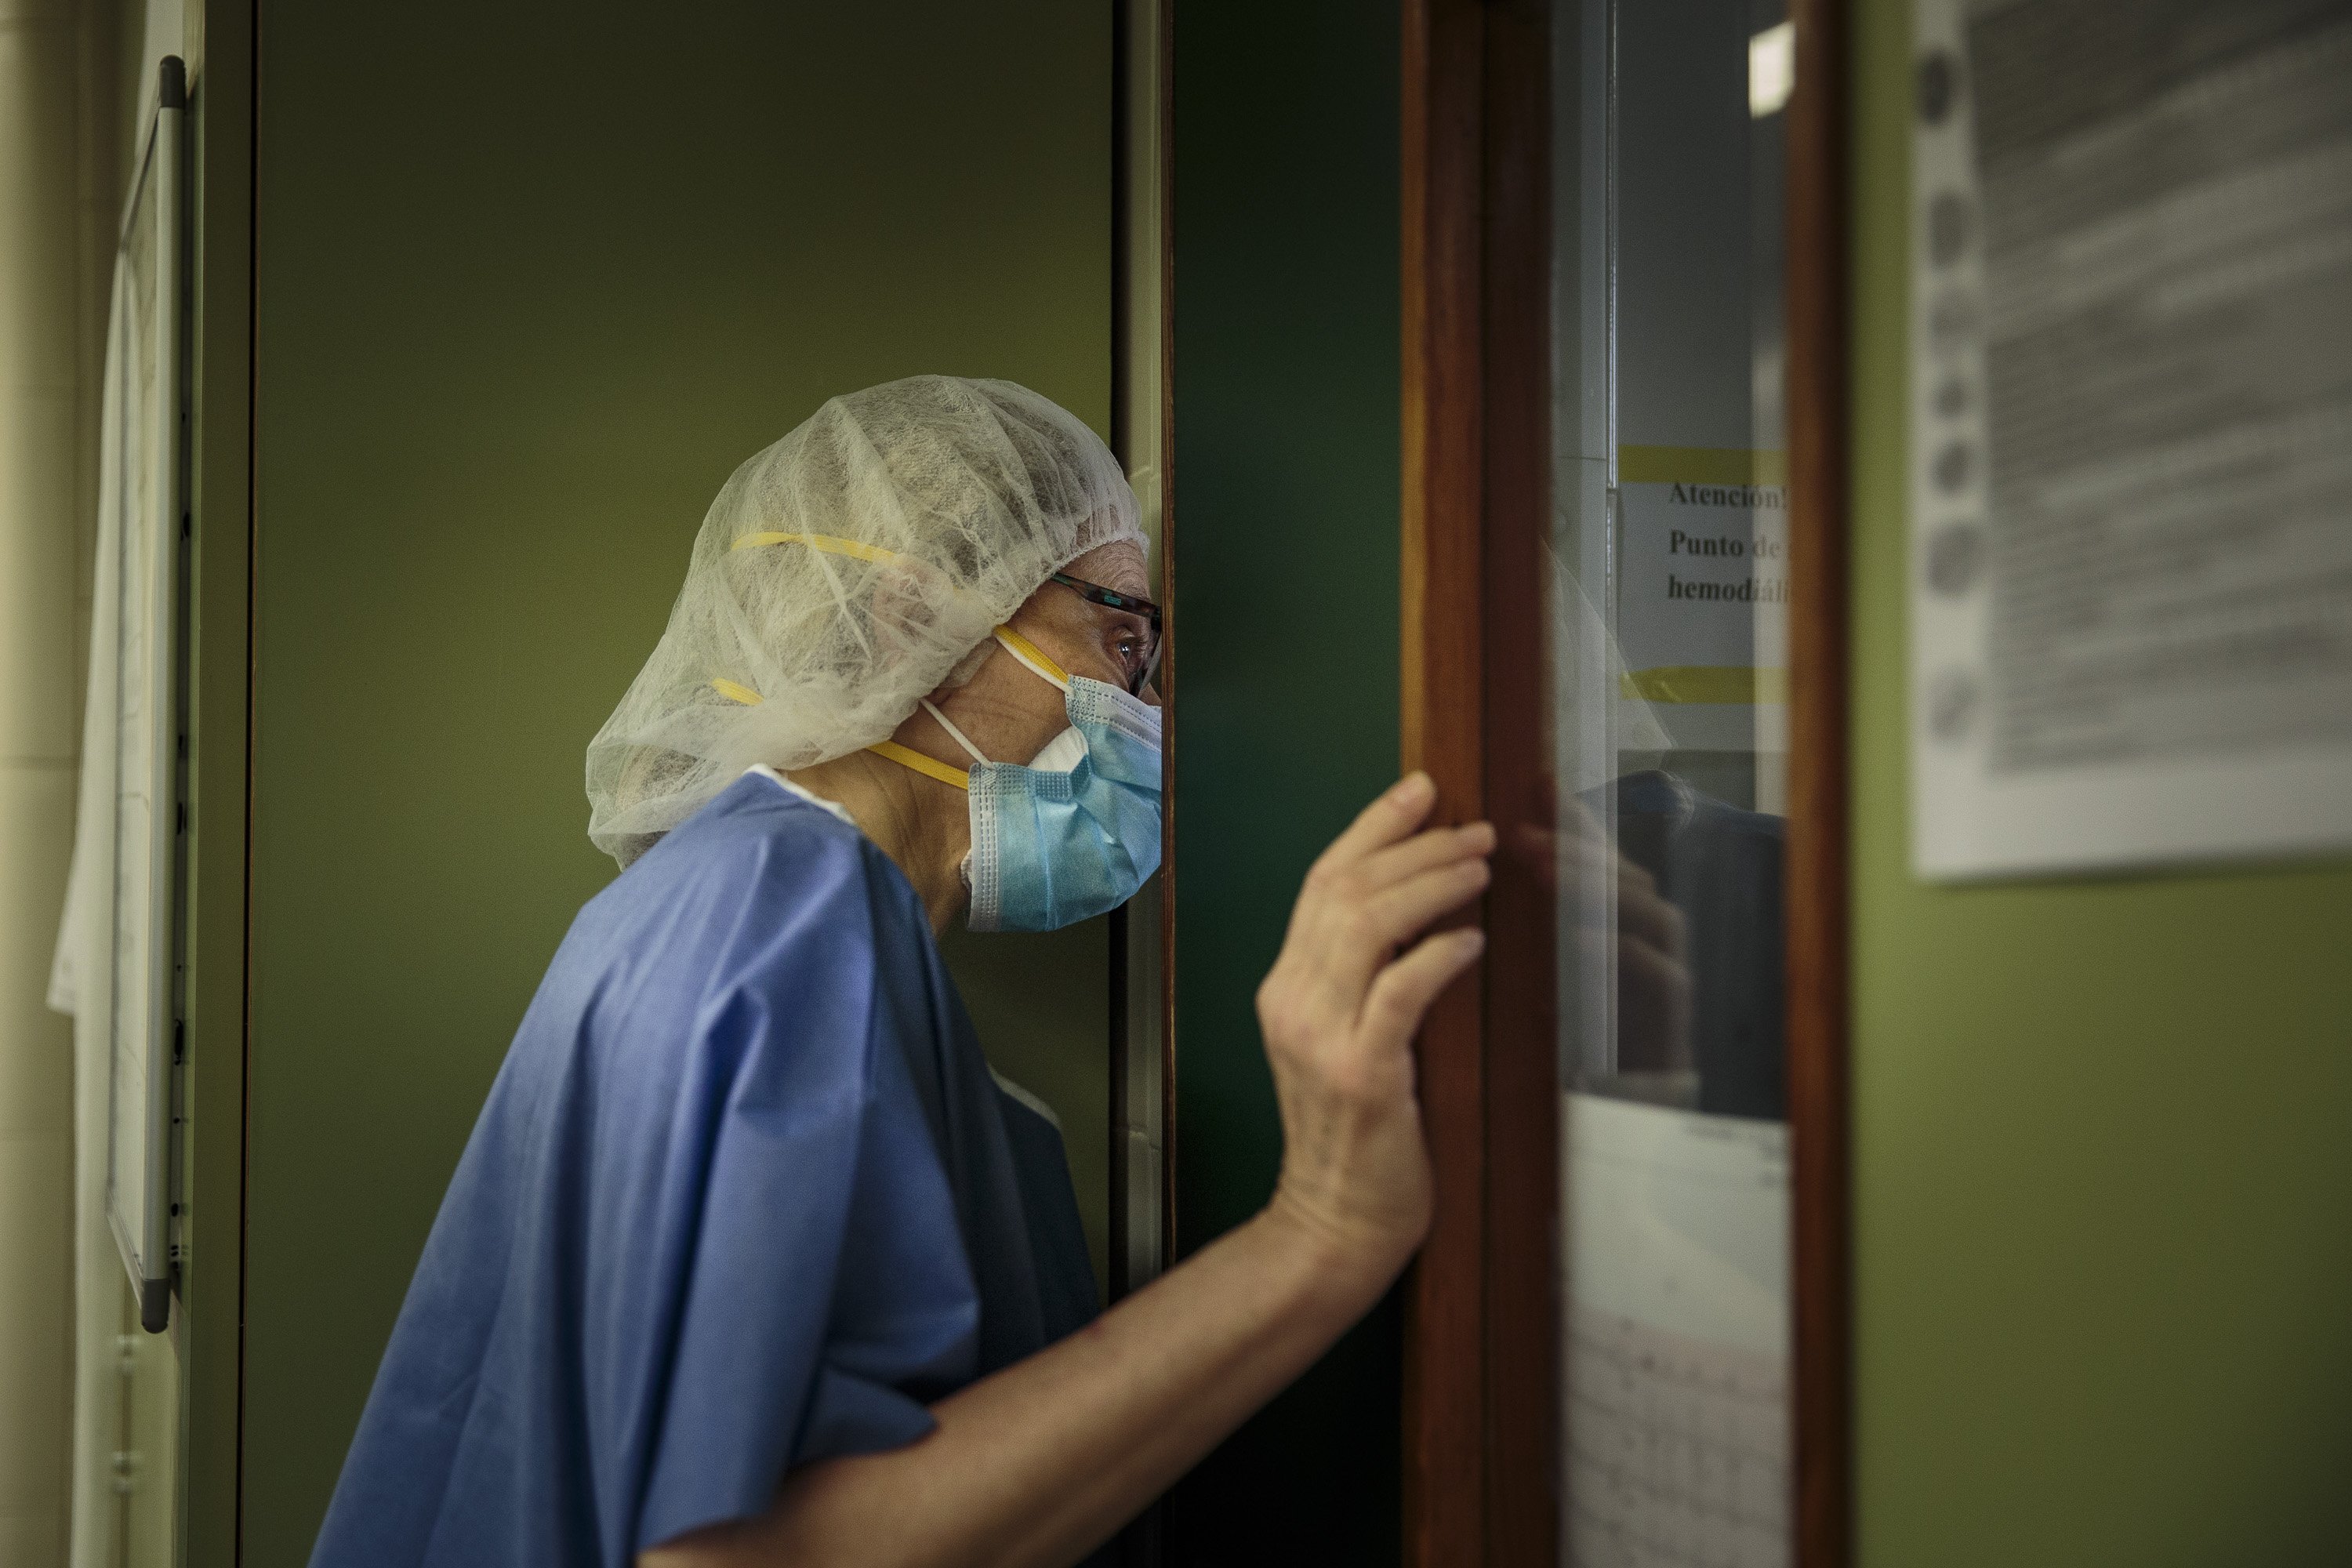 Els hospitals d'ordes religiosos rebutgen aplicar l'eutanàsia